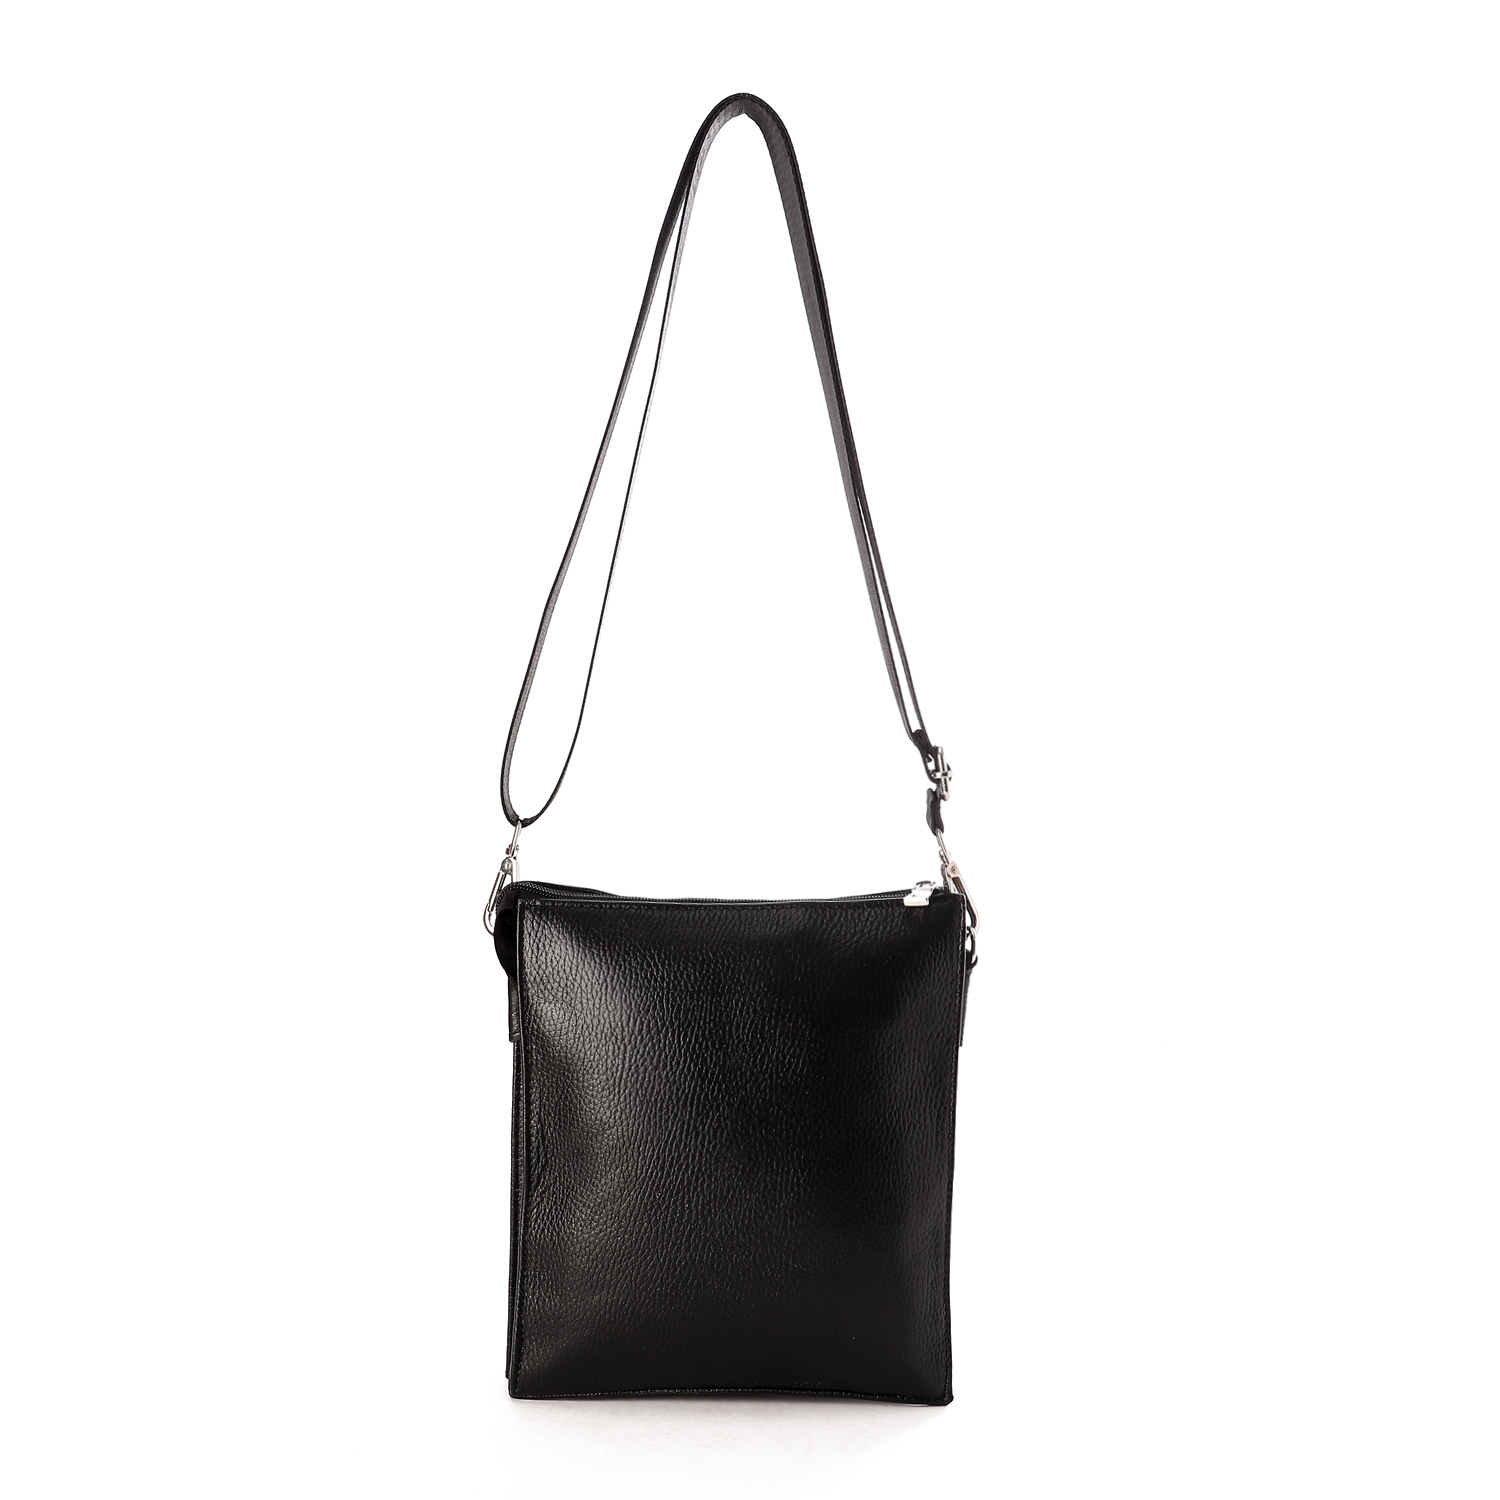 حقيبة كروس من أم أند أو بثلاث مقصورات جلد طبيعى للرجال - أسود